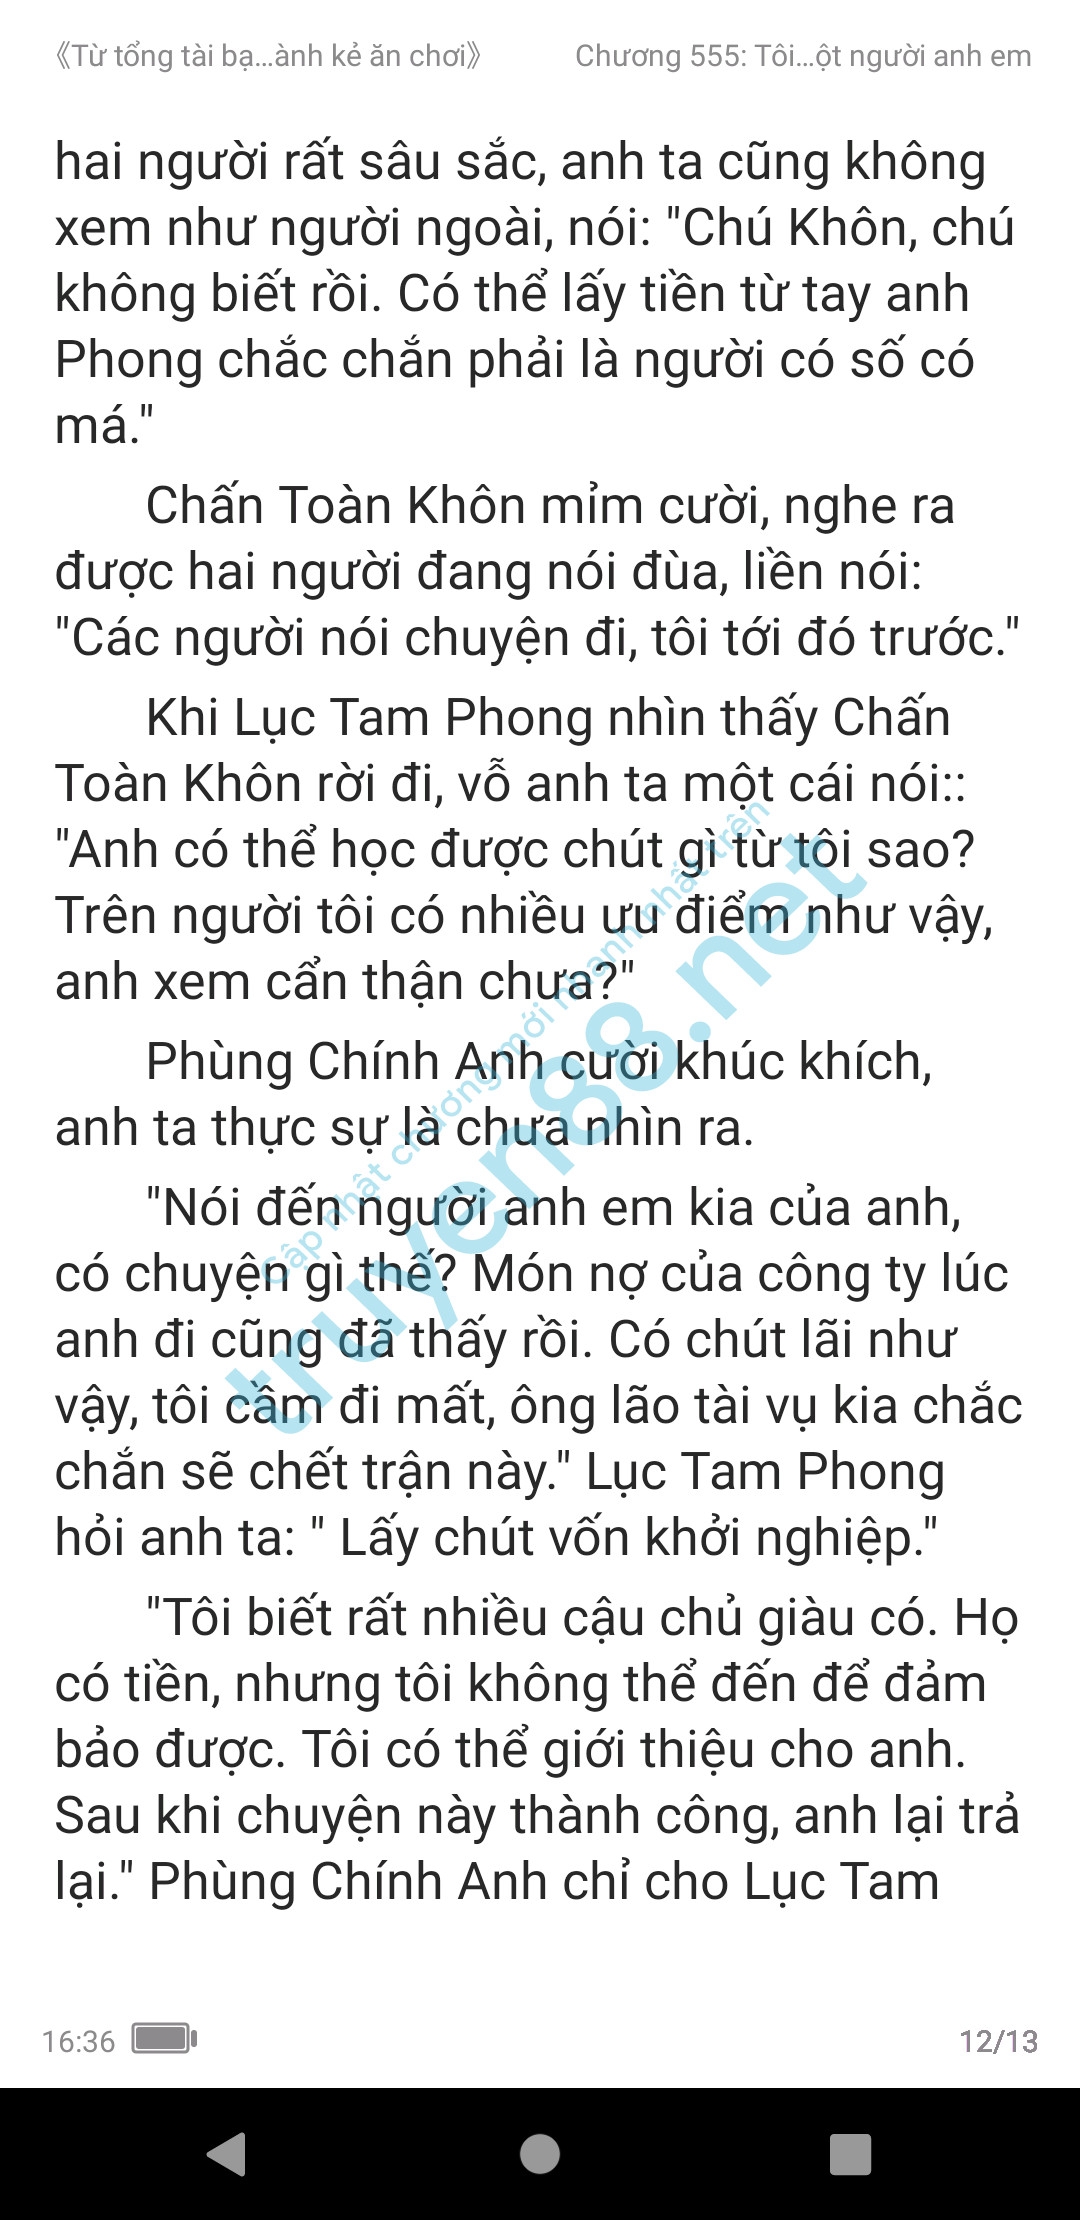 ke-an-choi-bien-tong-tai-555-1